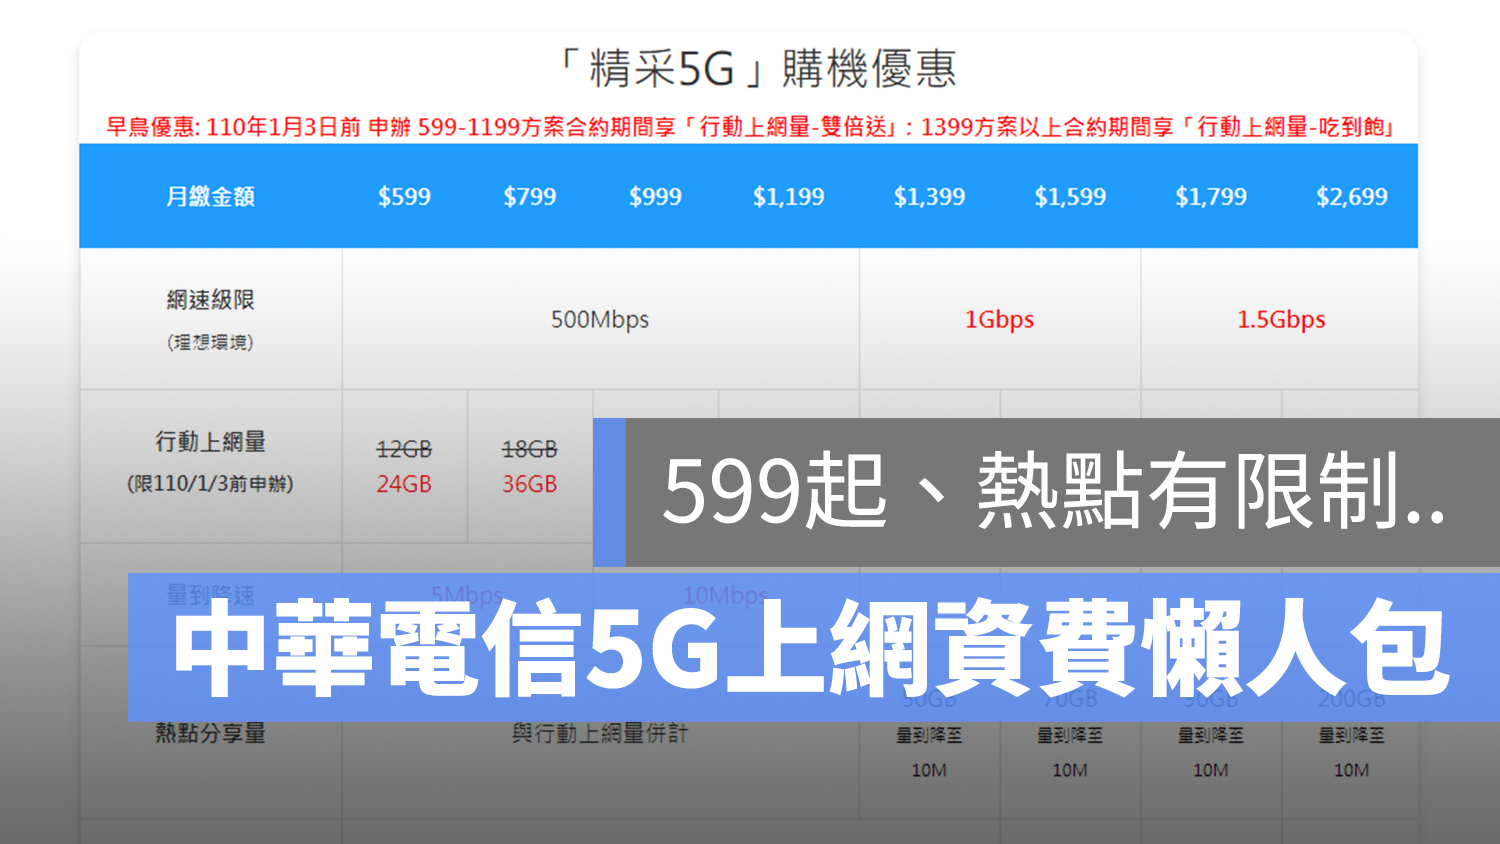 中華電信 5G 資費 上網